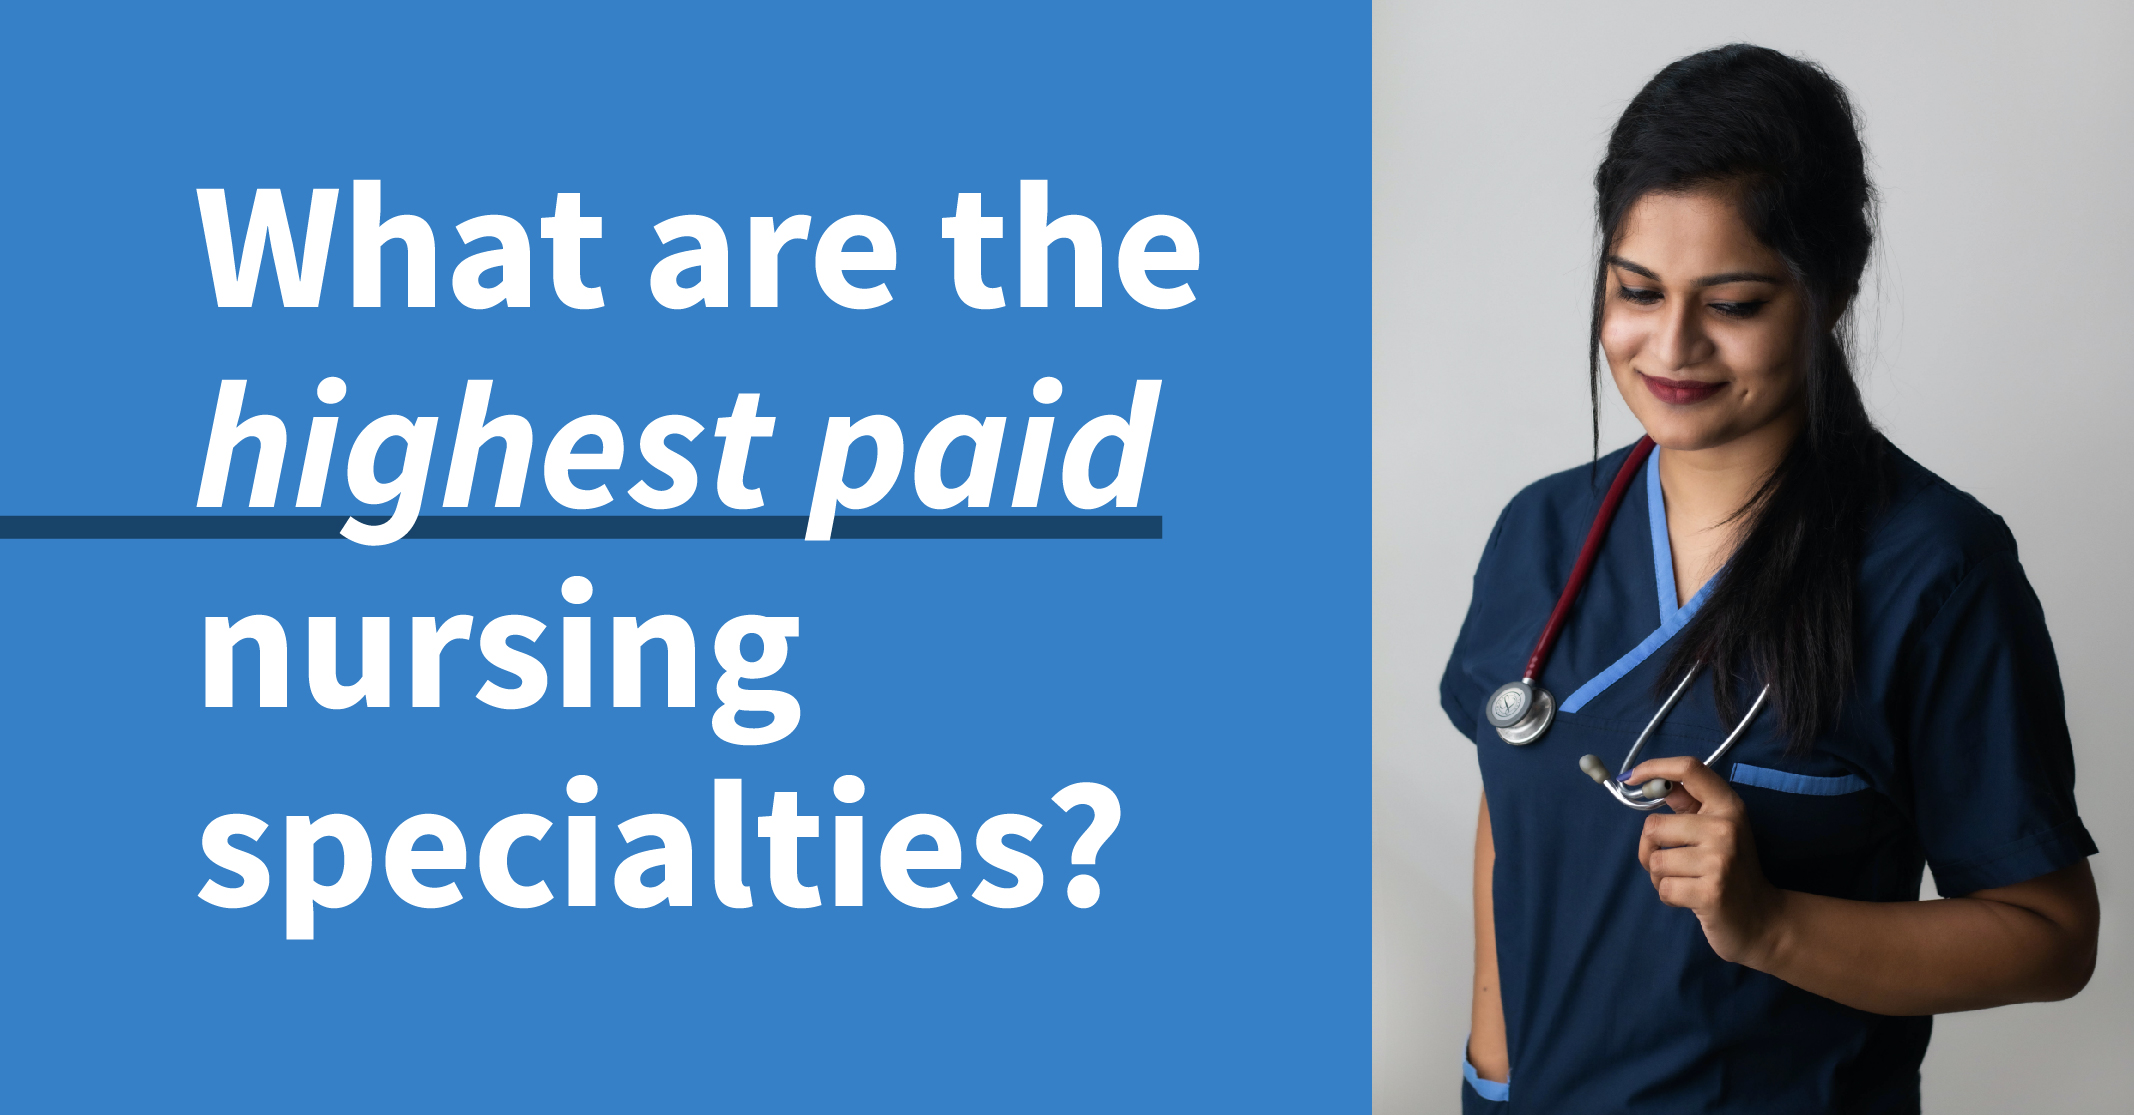 15 Highest Paid Nursing Specialties & Jobs